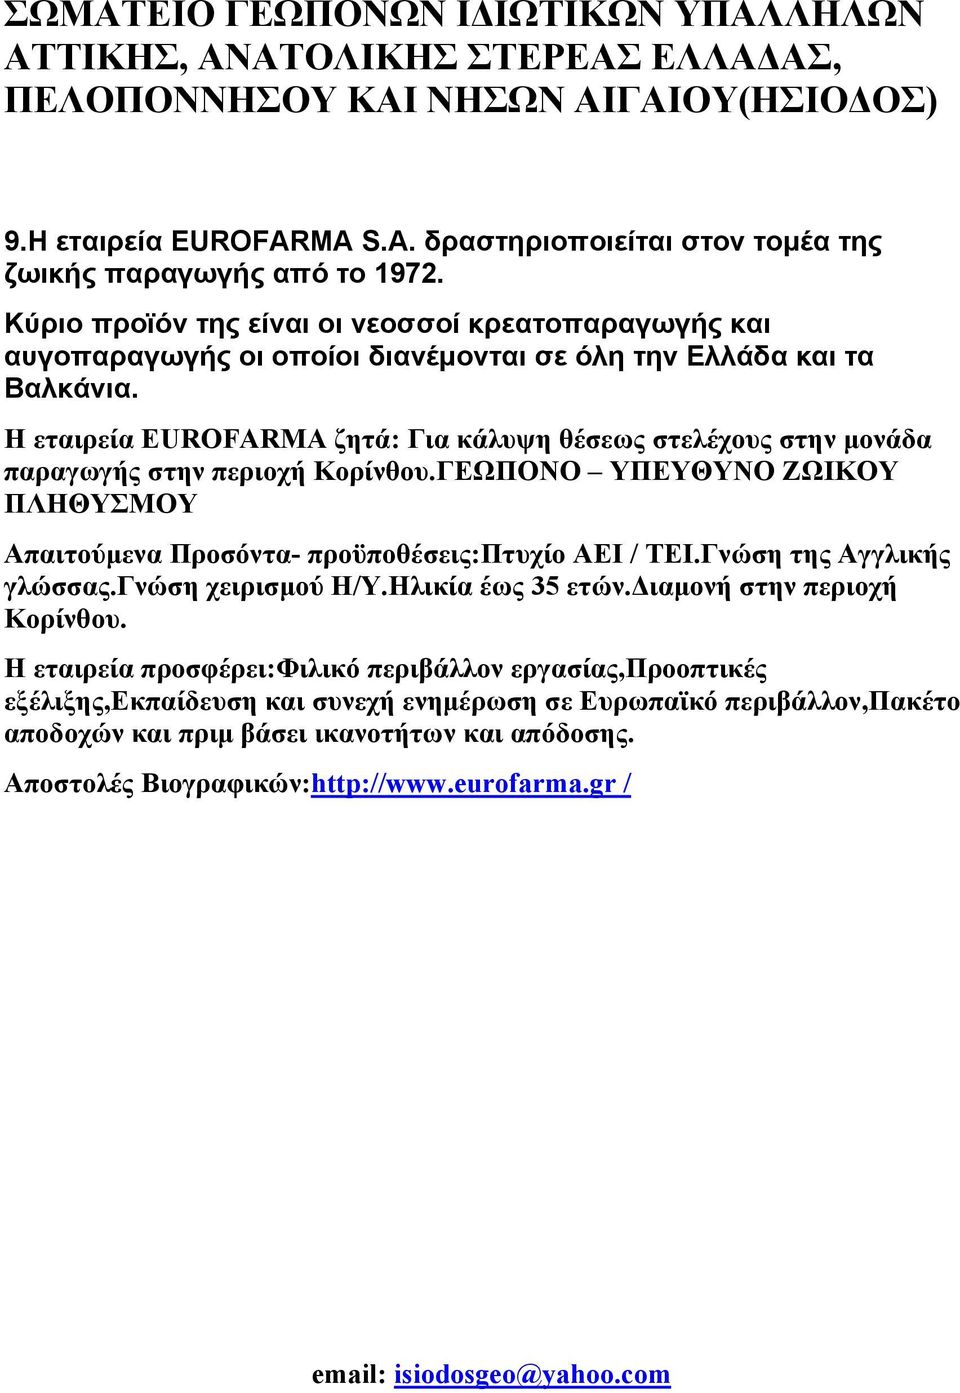 Η εταιρεία EUROFARMA ζητά: Για κάλυψη θέσεως στελέχους στην μονάδα παραγωγής στην περιοχή Κορίνθου.